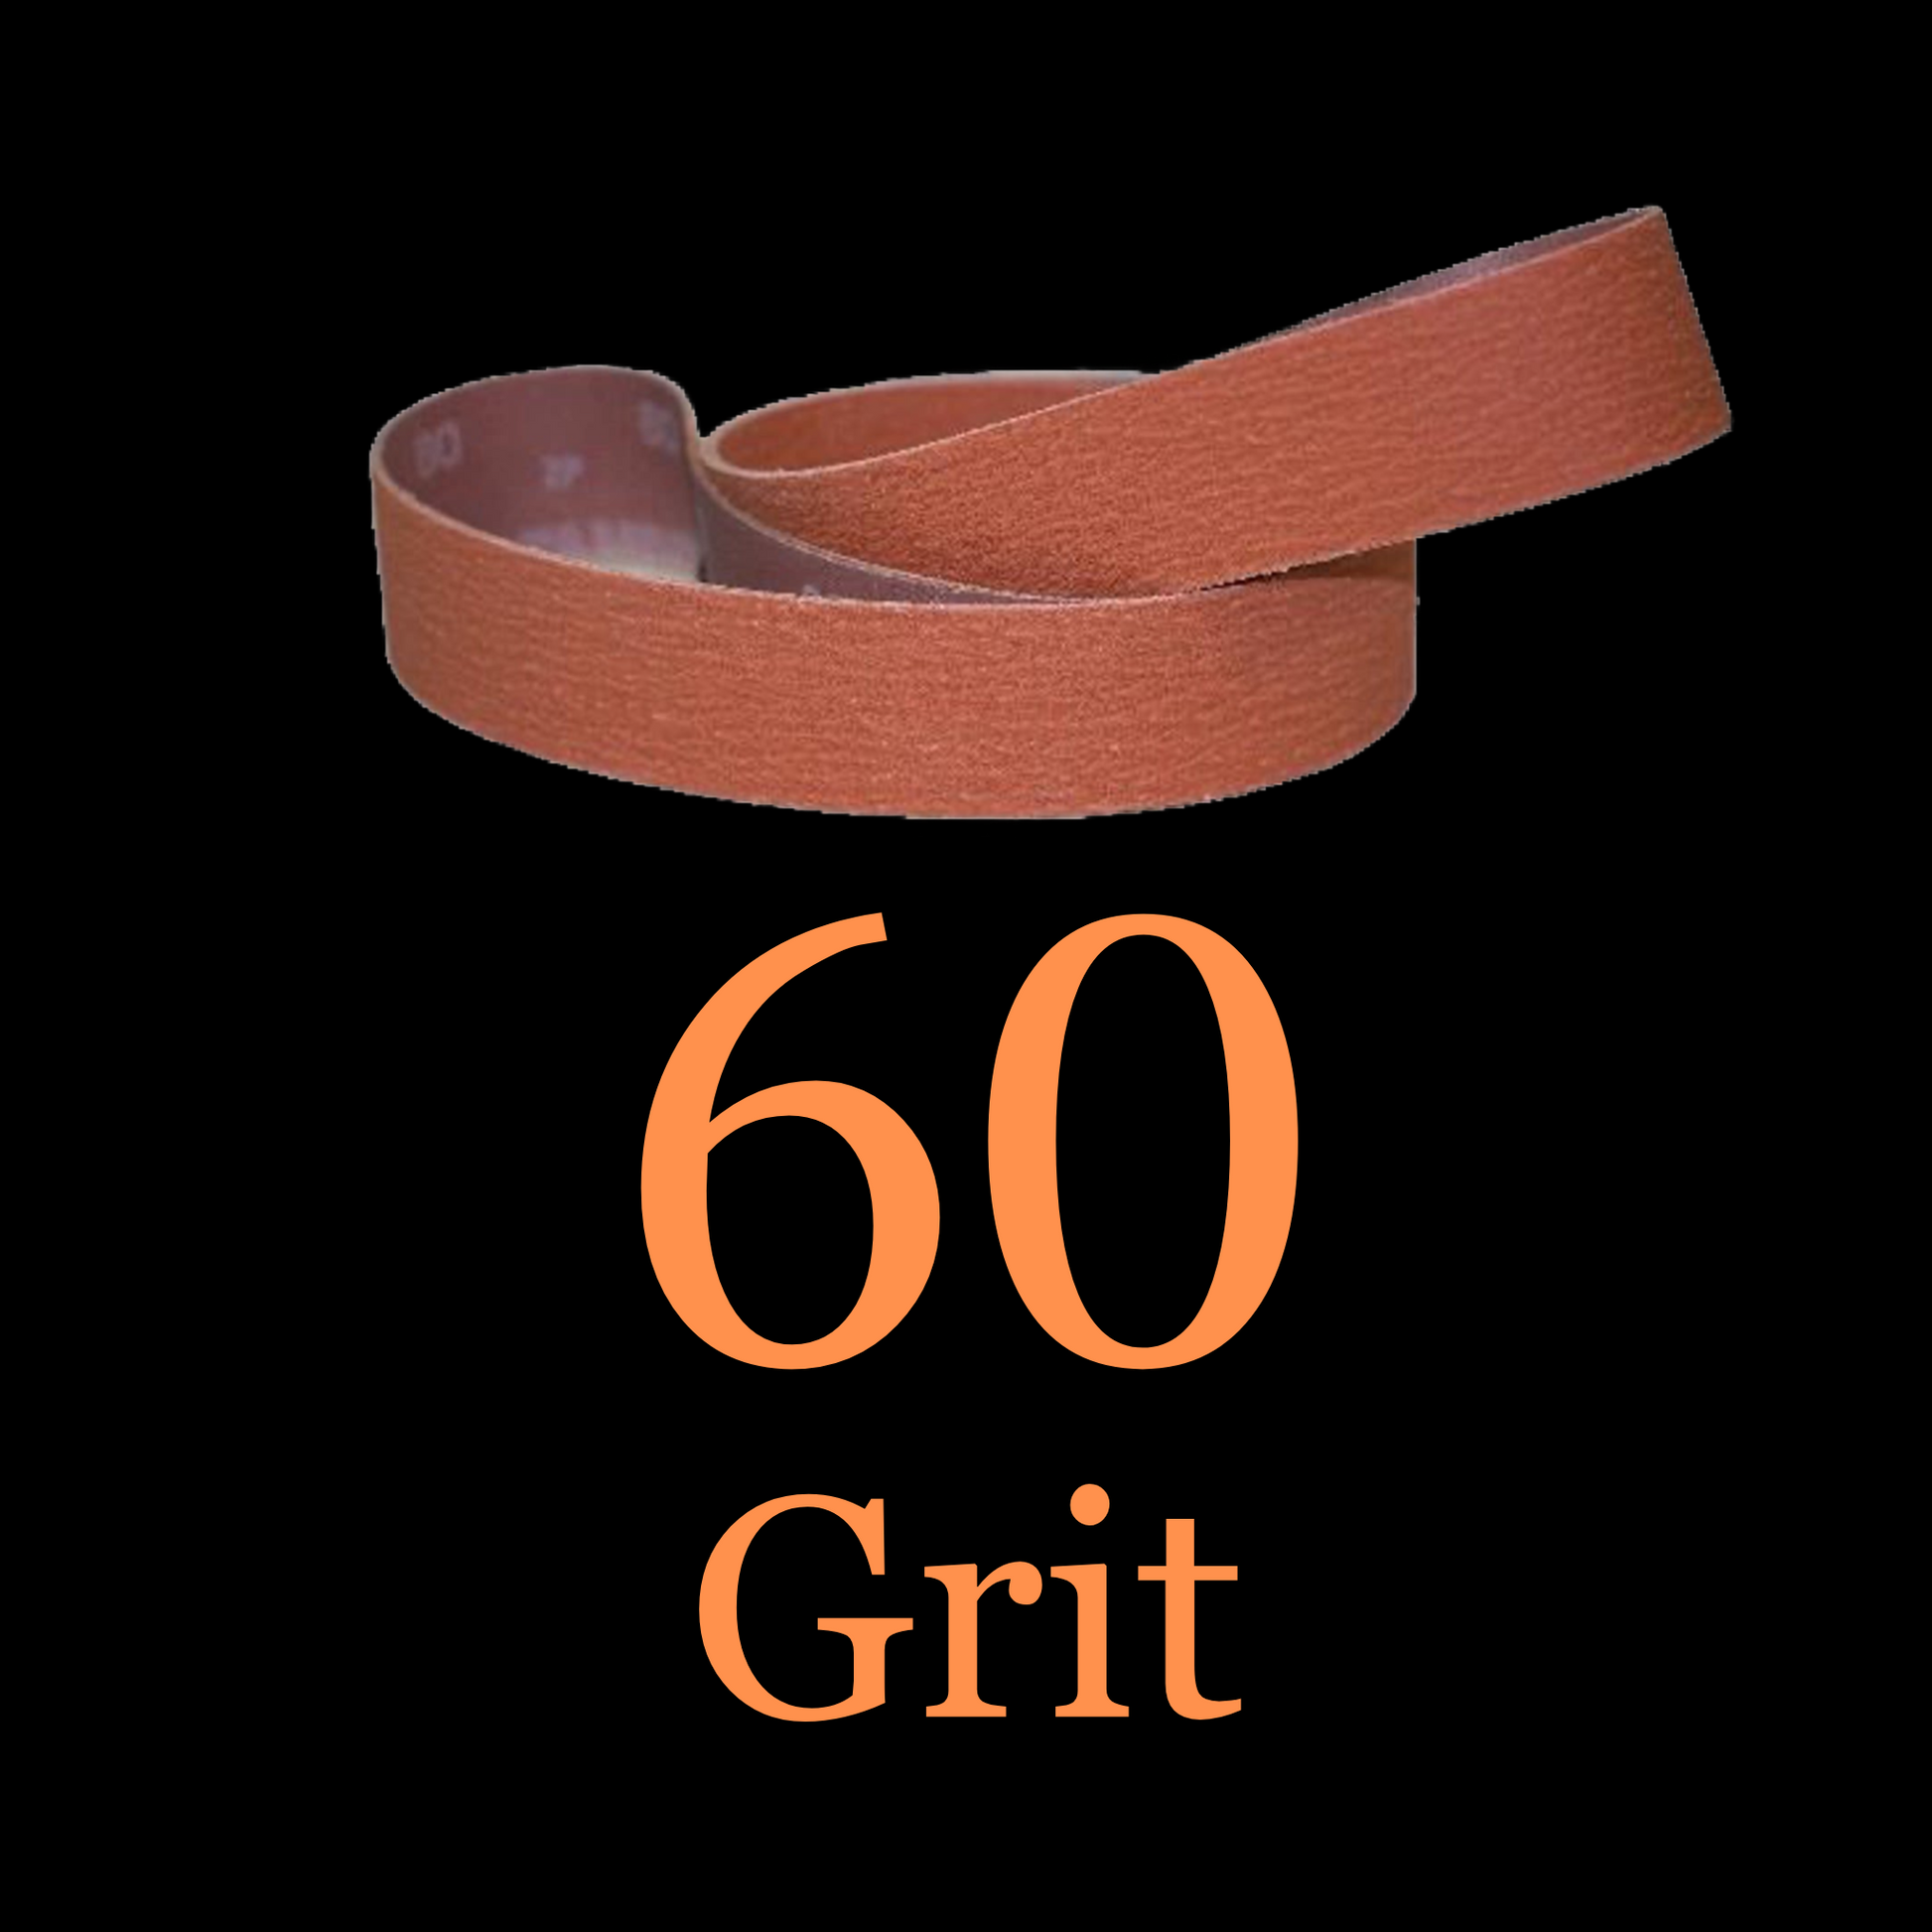 2” x 48” Ceramic Blaze Grinder Belt 60 Grit